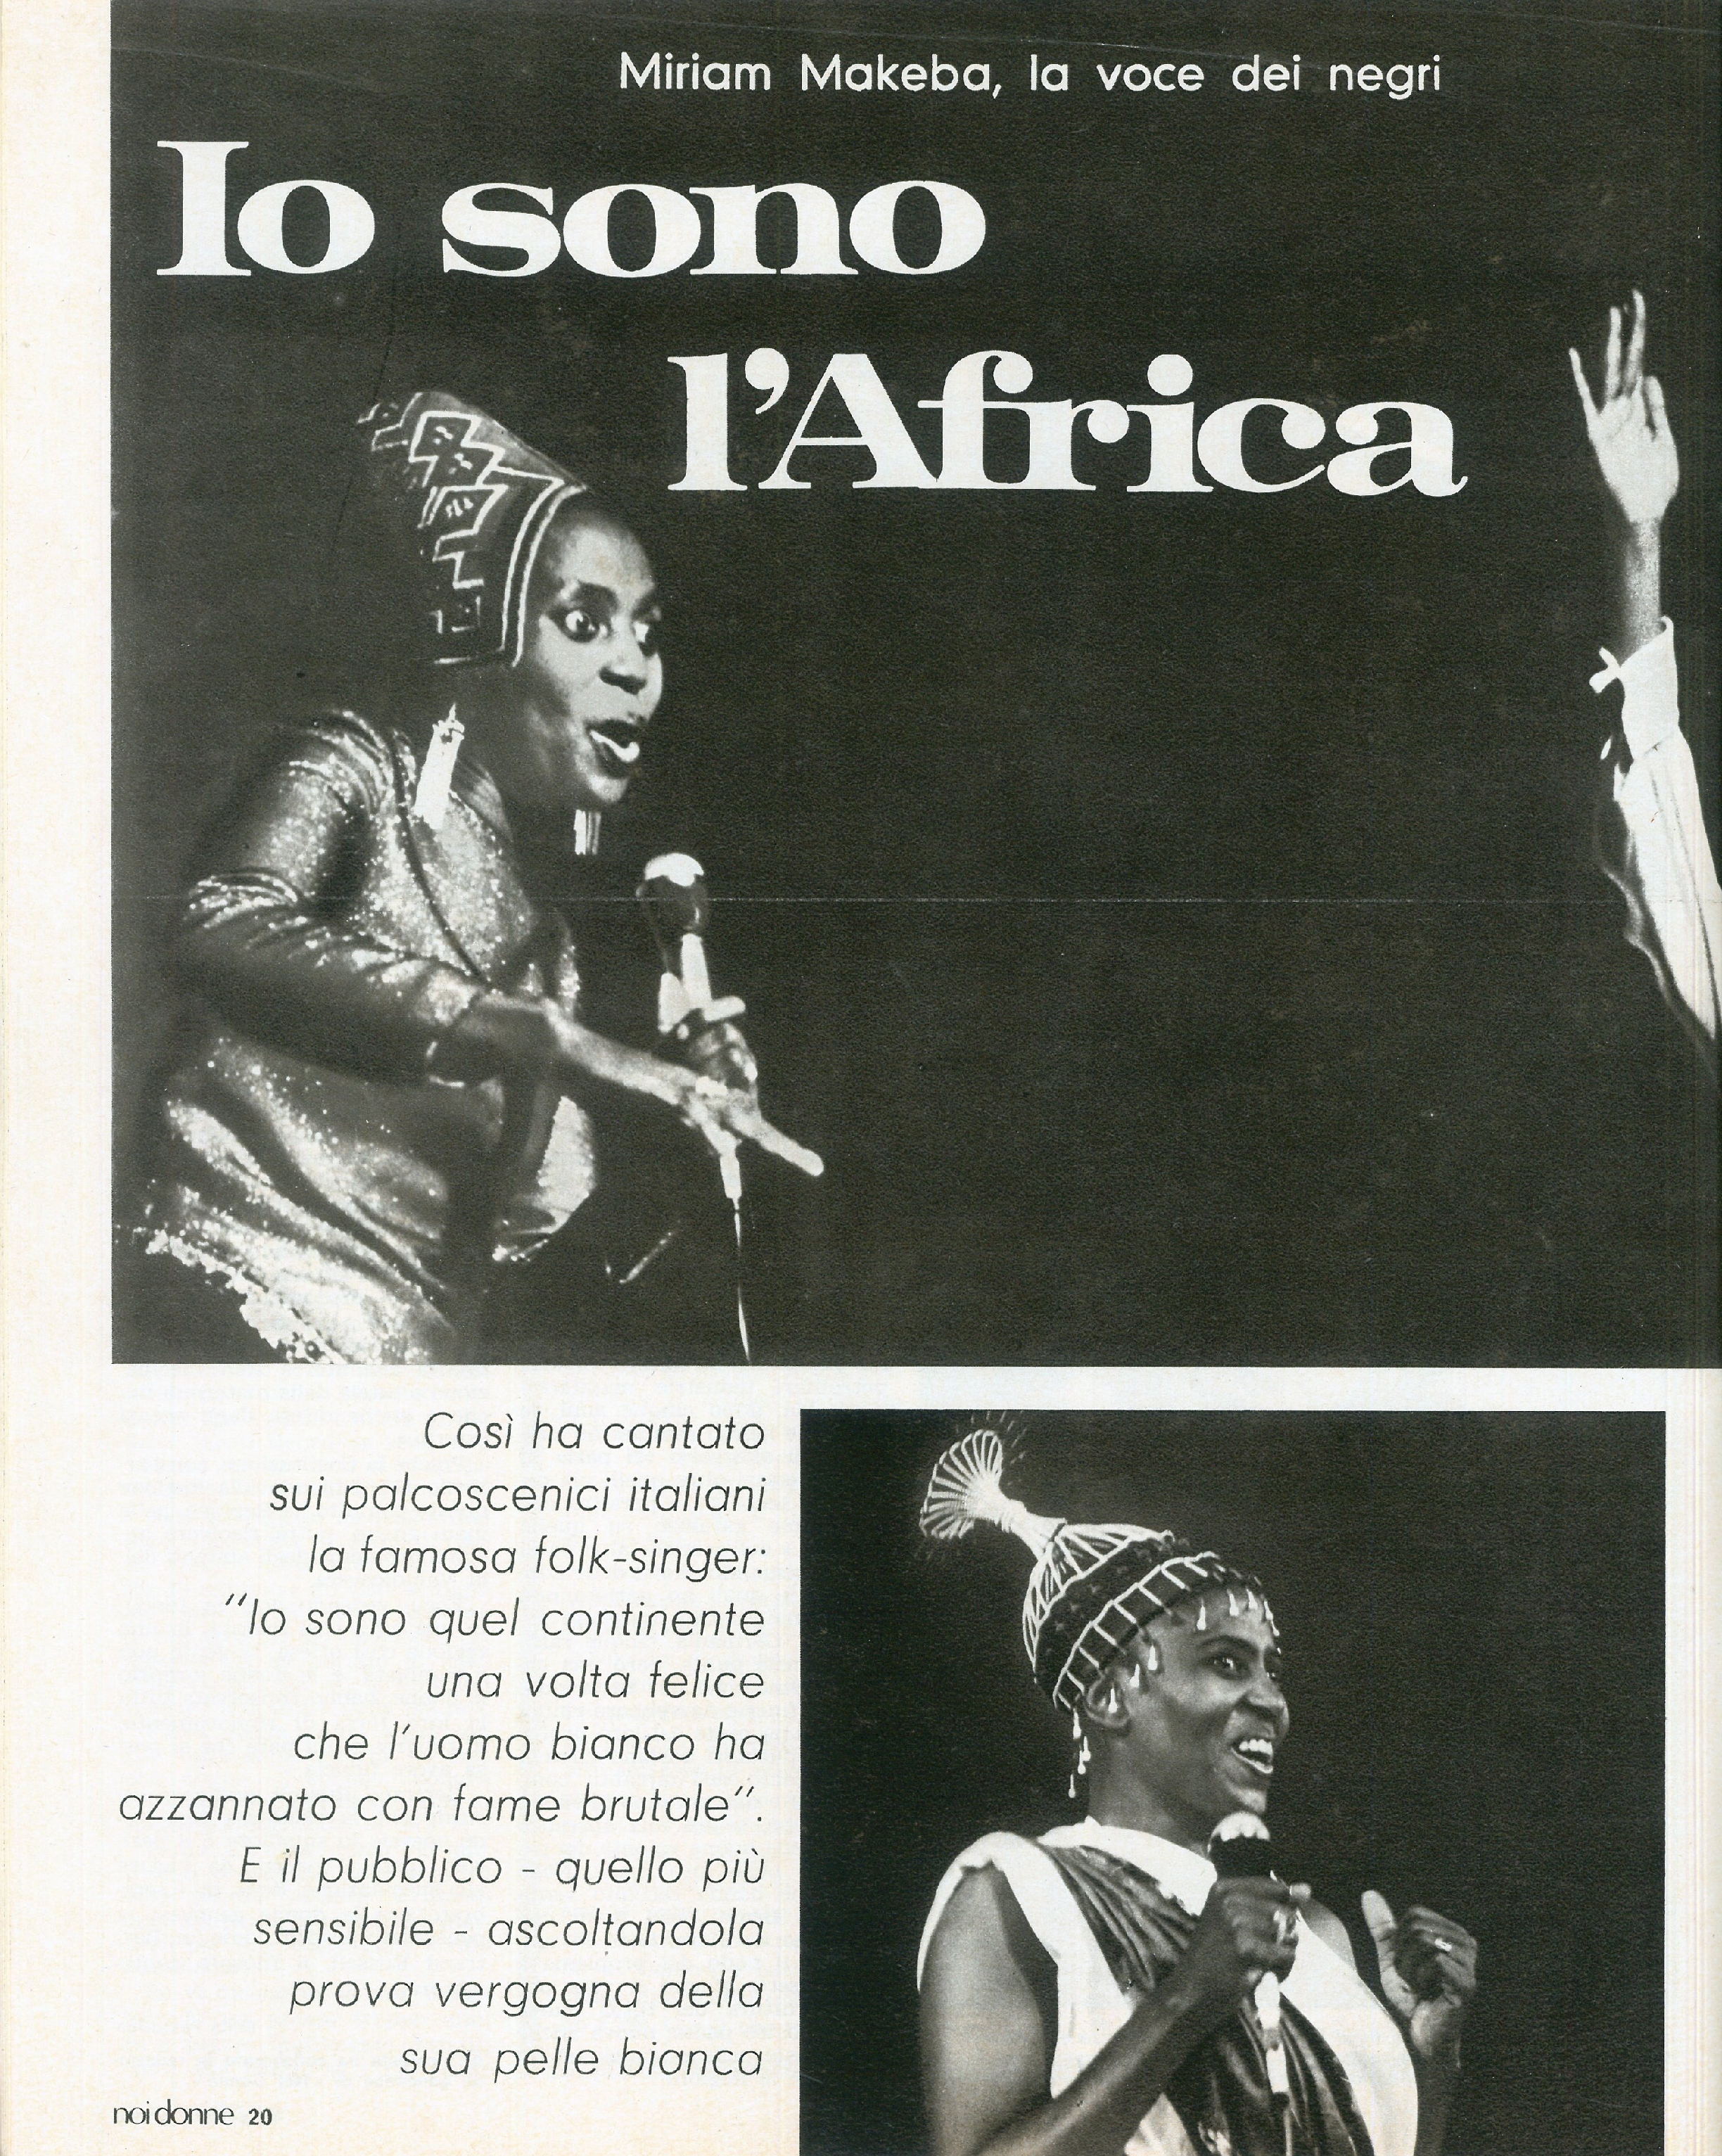 Foto: L'Africa di Miriam Makeba; Genova e la Valpolcevera; L'OMNI non serve più; la ricerca e i tumori